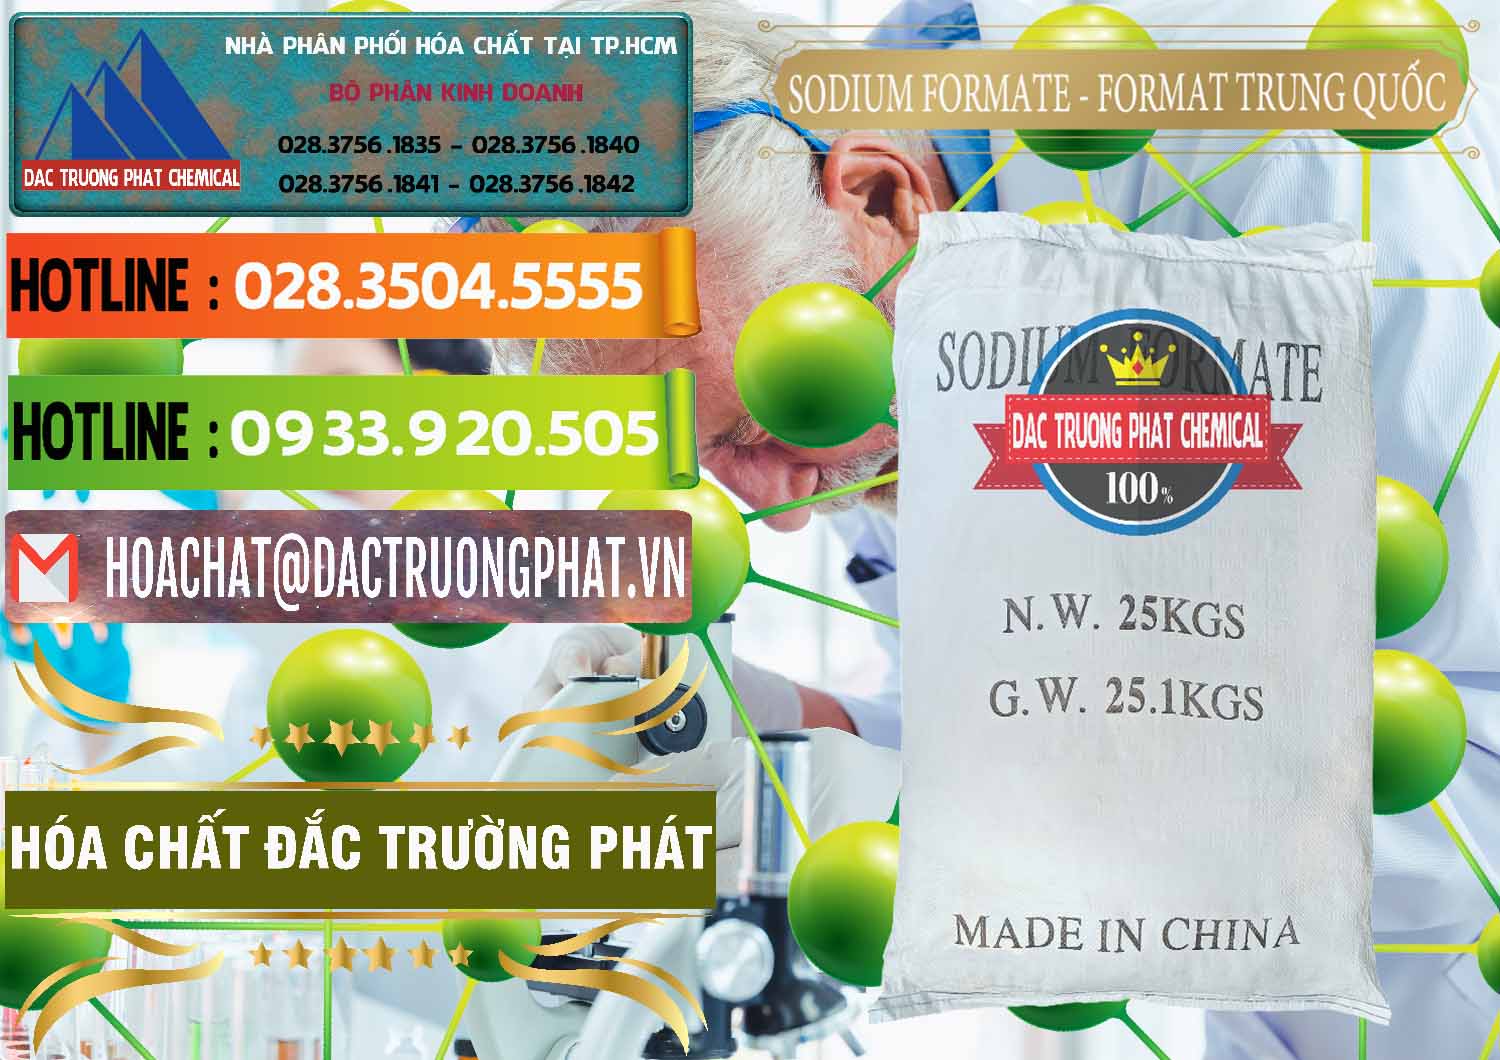 Bán & cung ứng Sodium Formate - Natri Format Trung Quốc China - 0142 - Nơi chuyên kinh doanh ( phân phối ) hóa chất tại TP.HCM - cungcaphoachat.com.vn